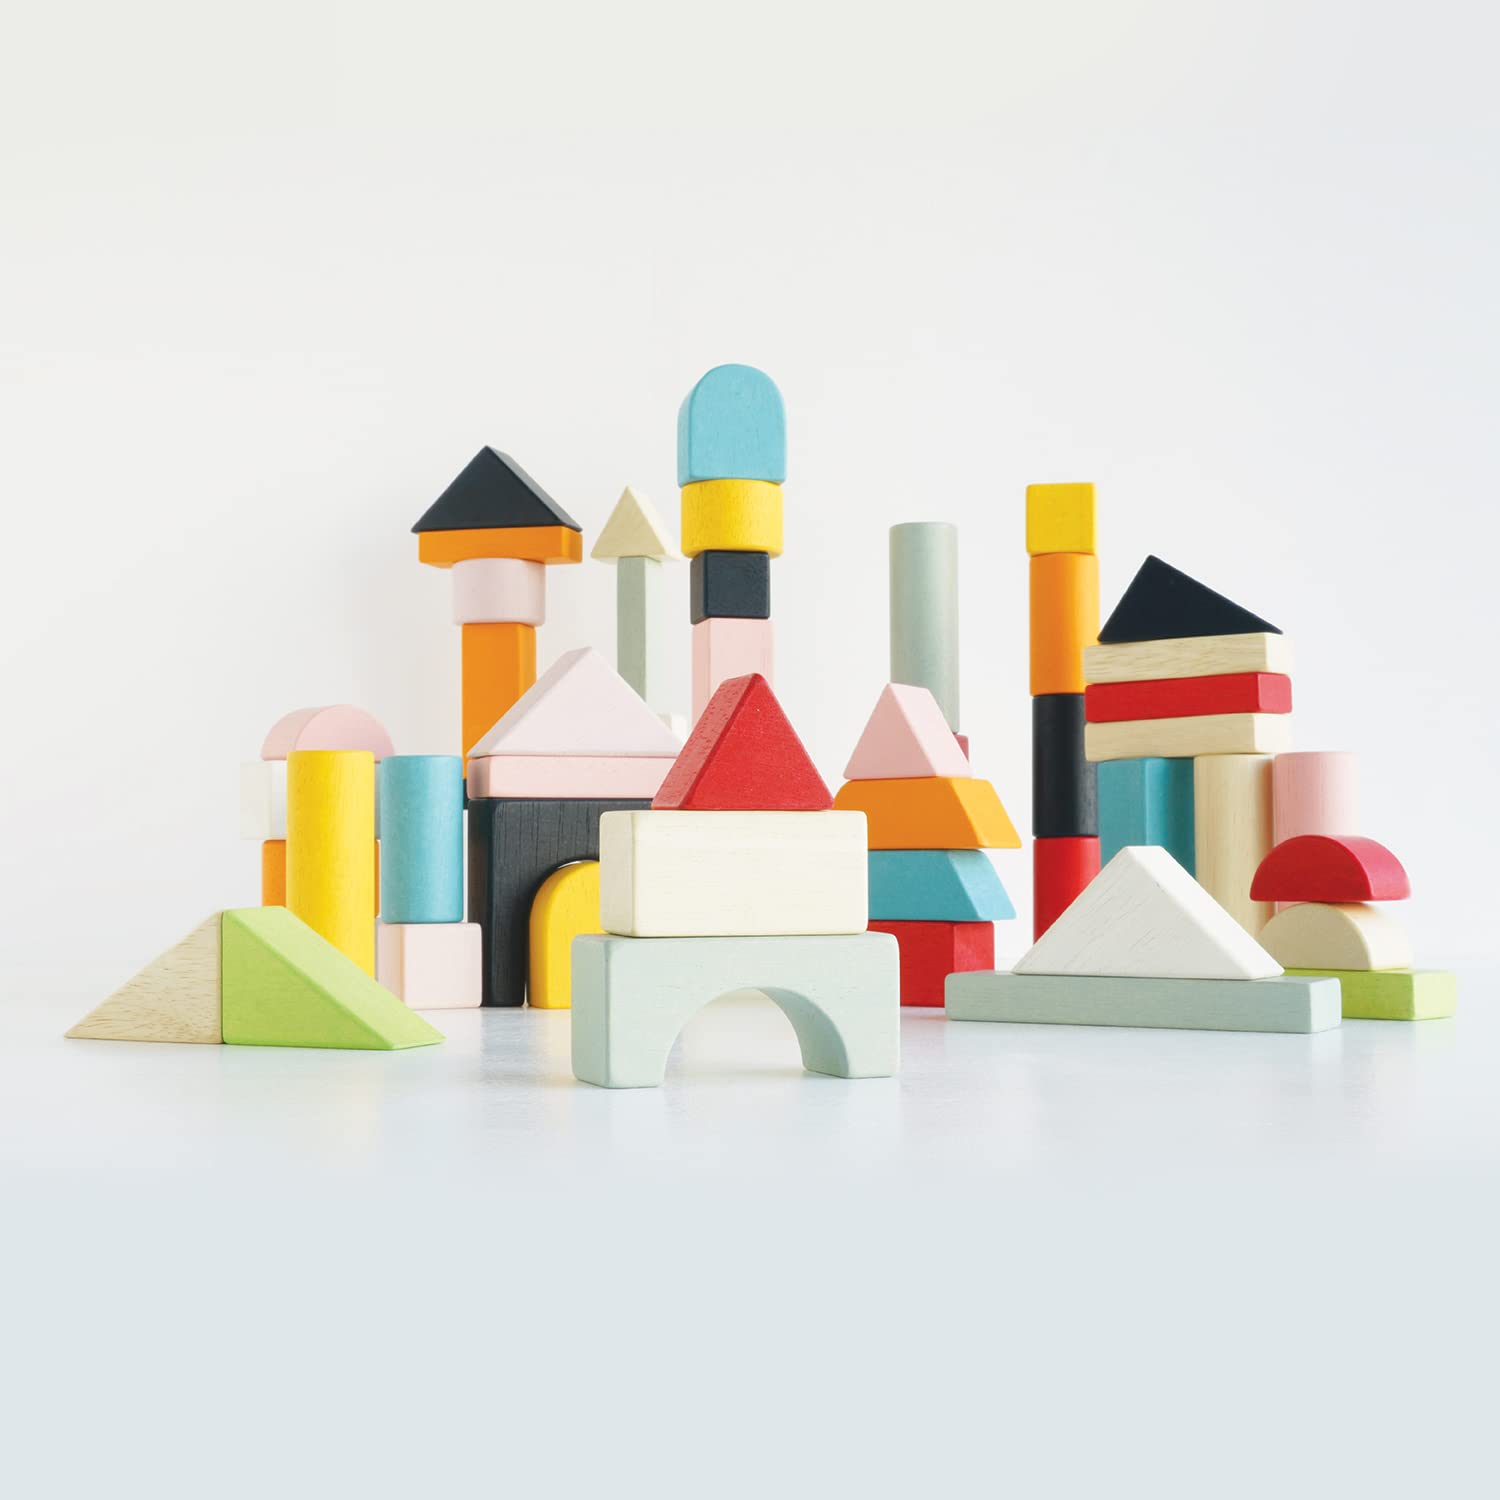 Le Toy Van - Educational Wooden Building Blocks 60 Piece Set Toy | Montessori Style Shape & Colour Development Toy - Suitable for 12 Months + (PL135)